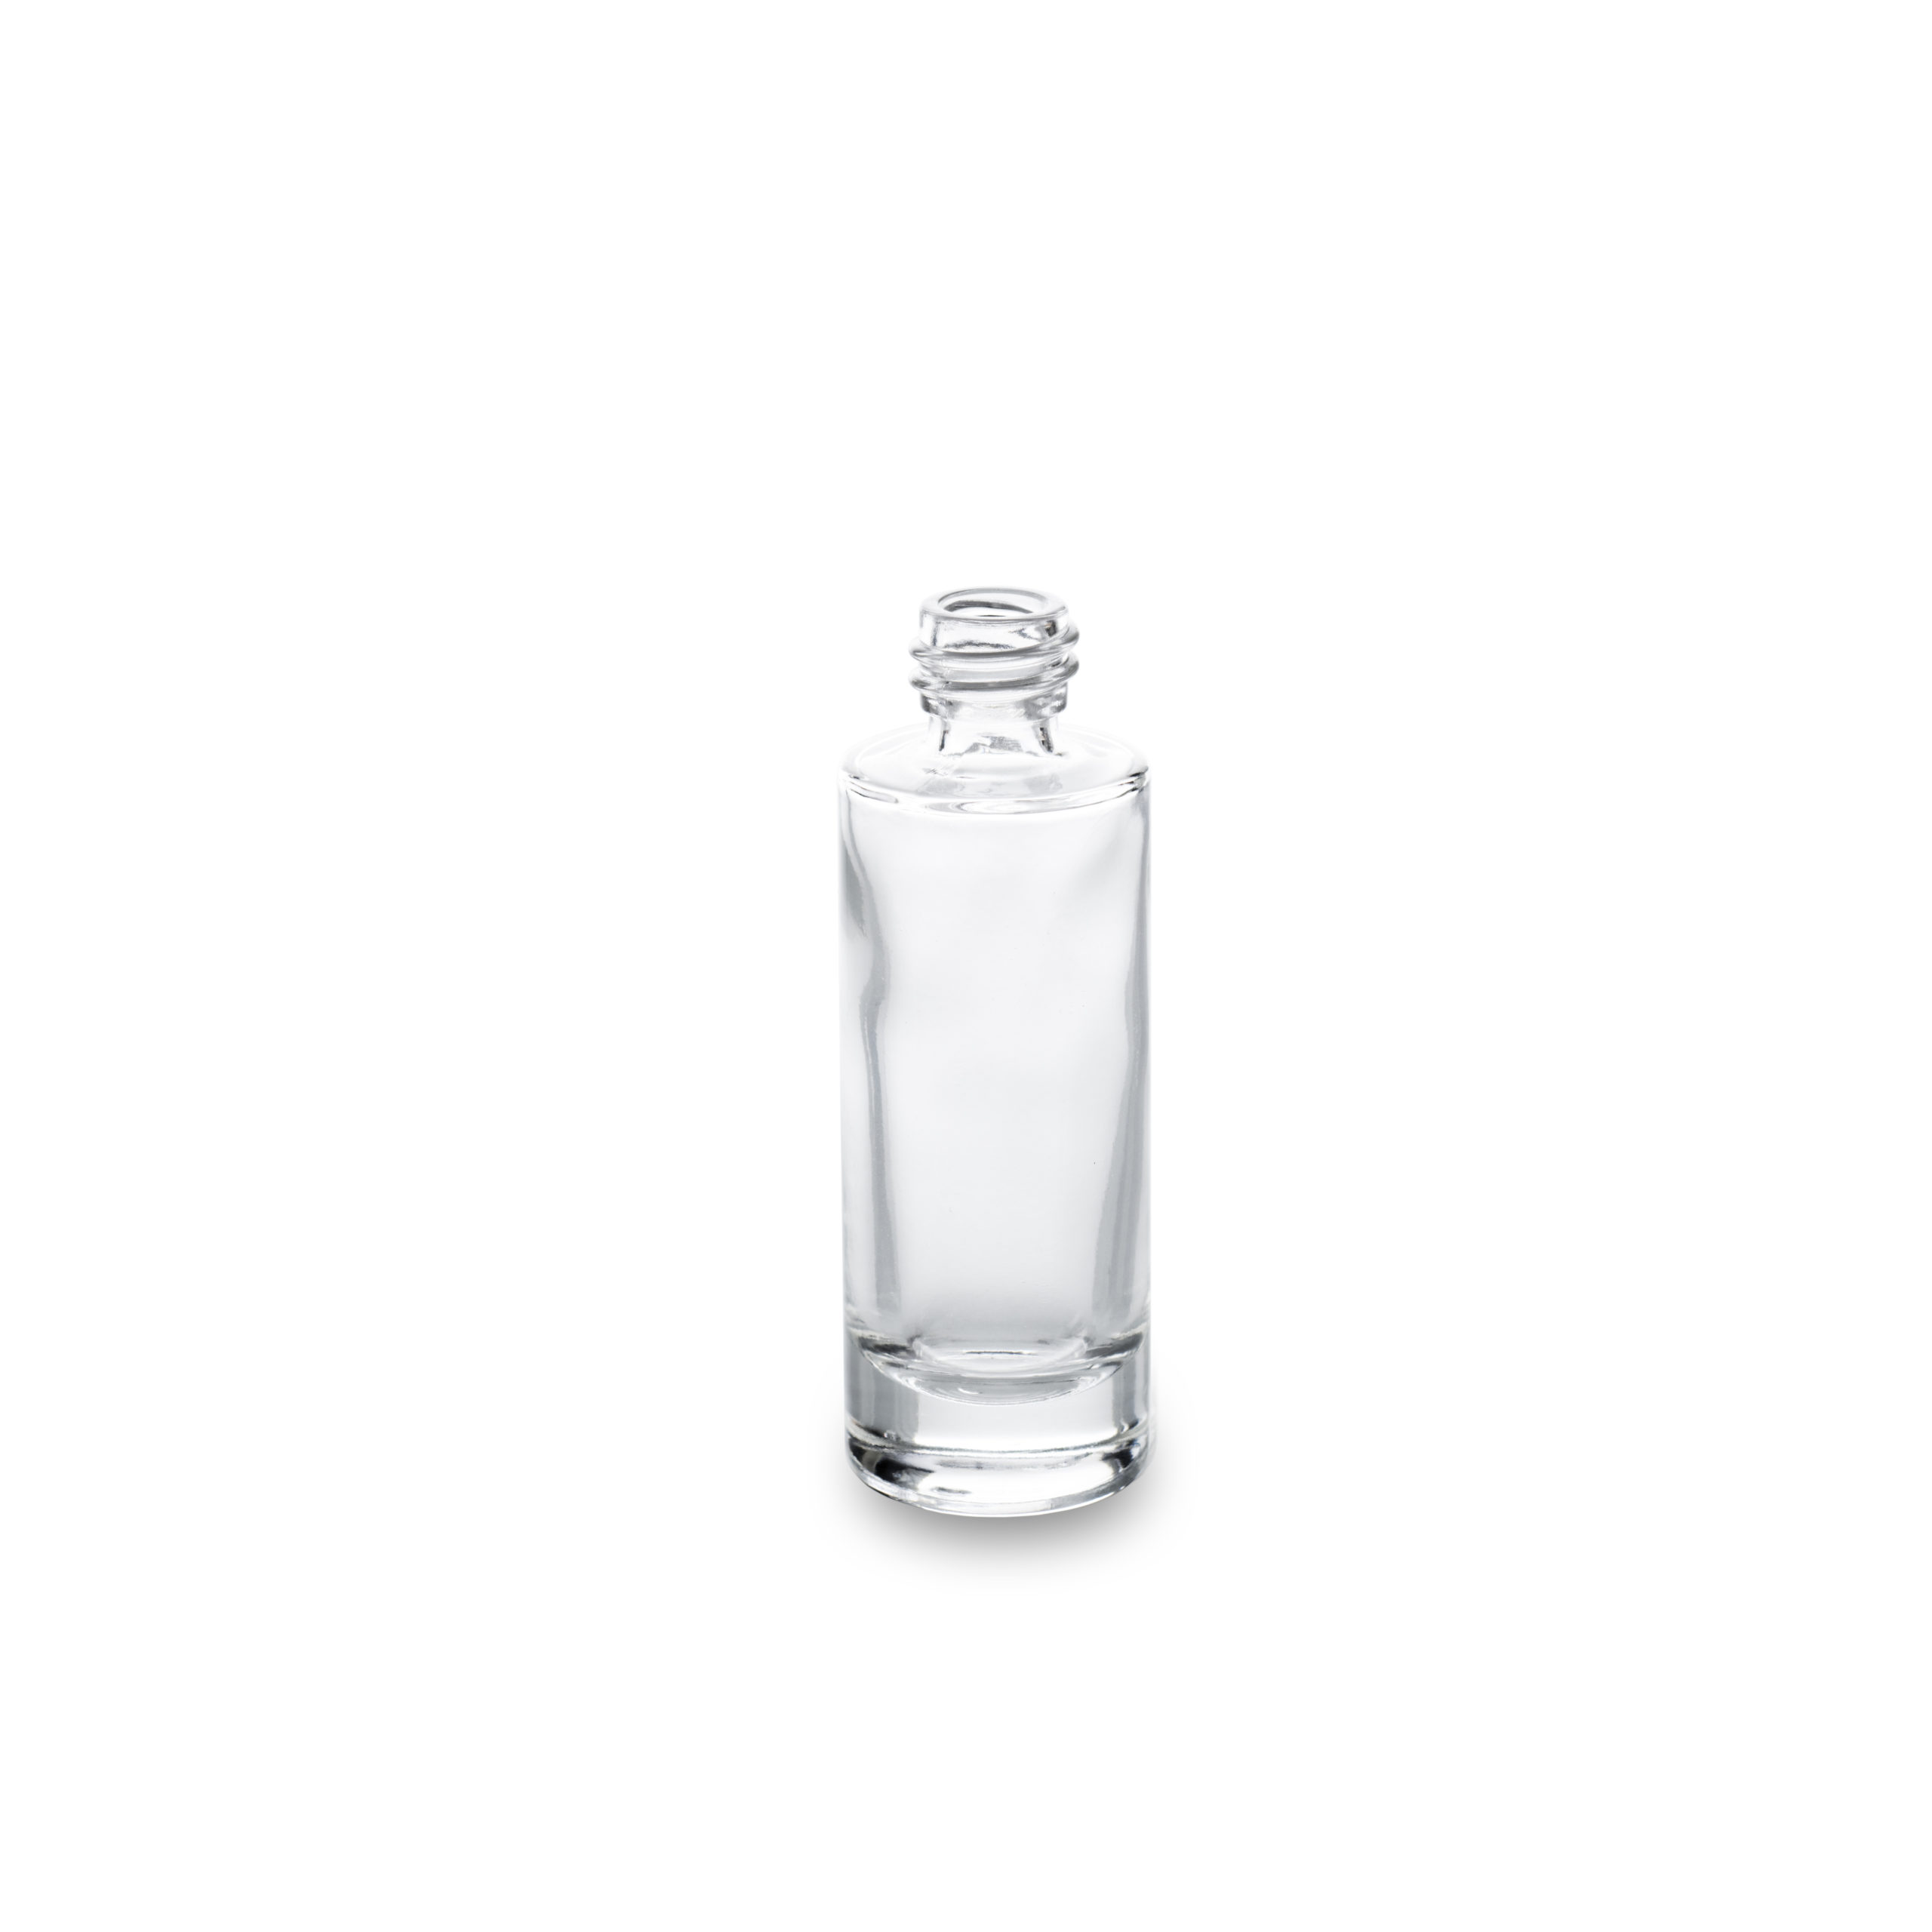 Le flacon cosmétique verre Aurore en 30 ml